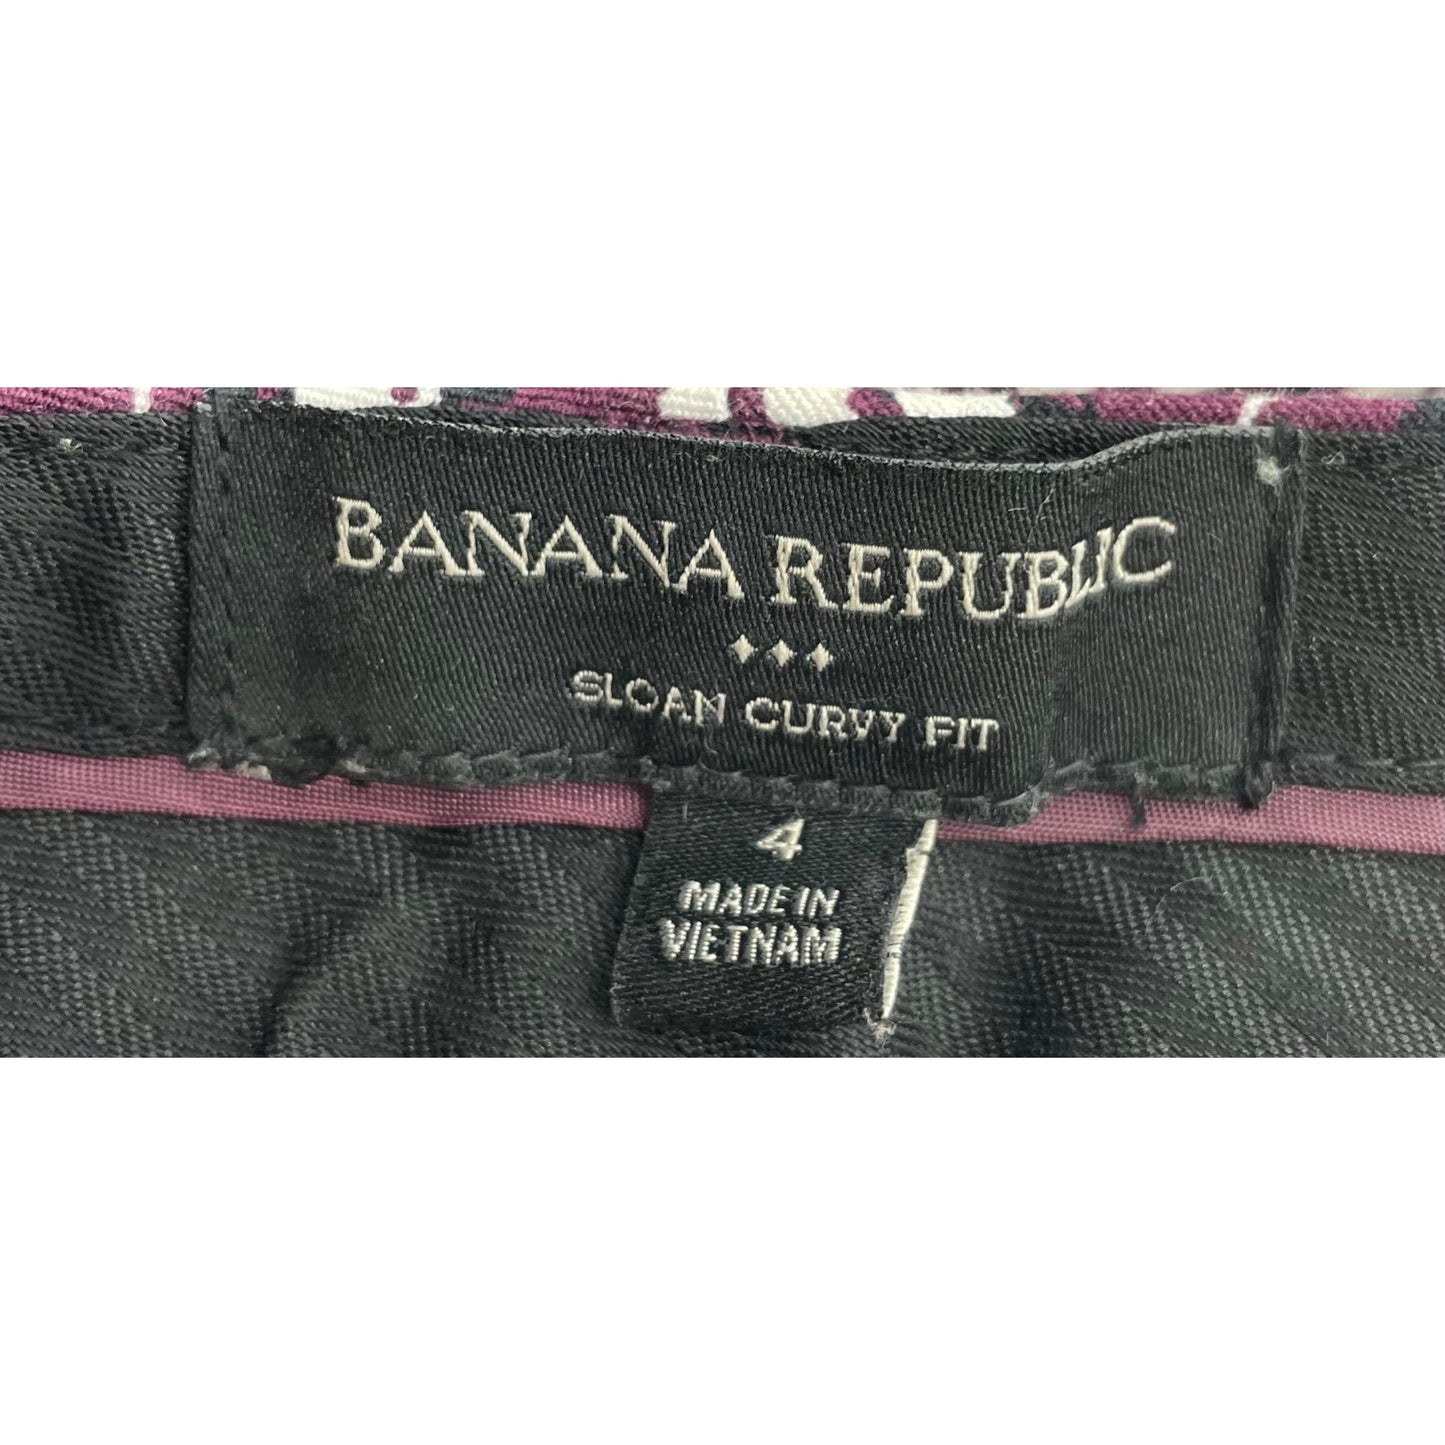 Banana Republic Women's Size 4 Sloan Curvy Fit Purple Slacks W/ Black/White Floral Pattern